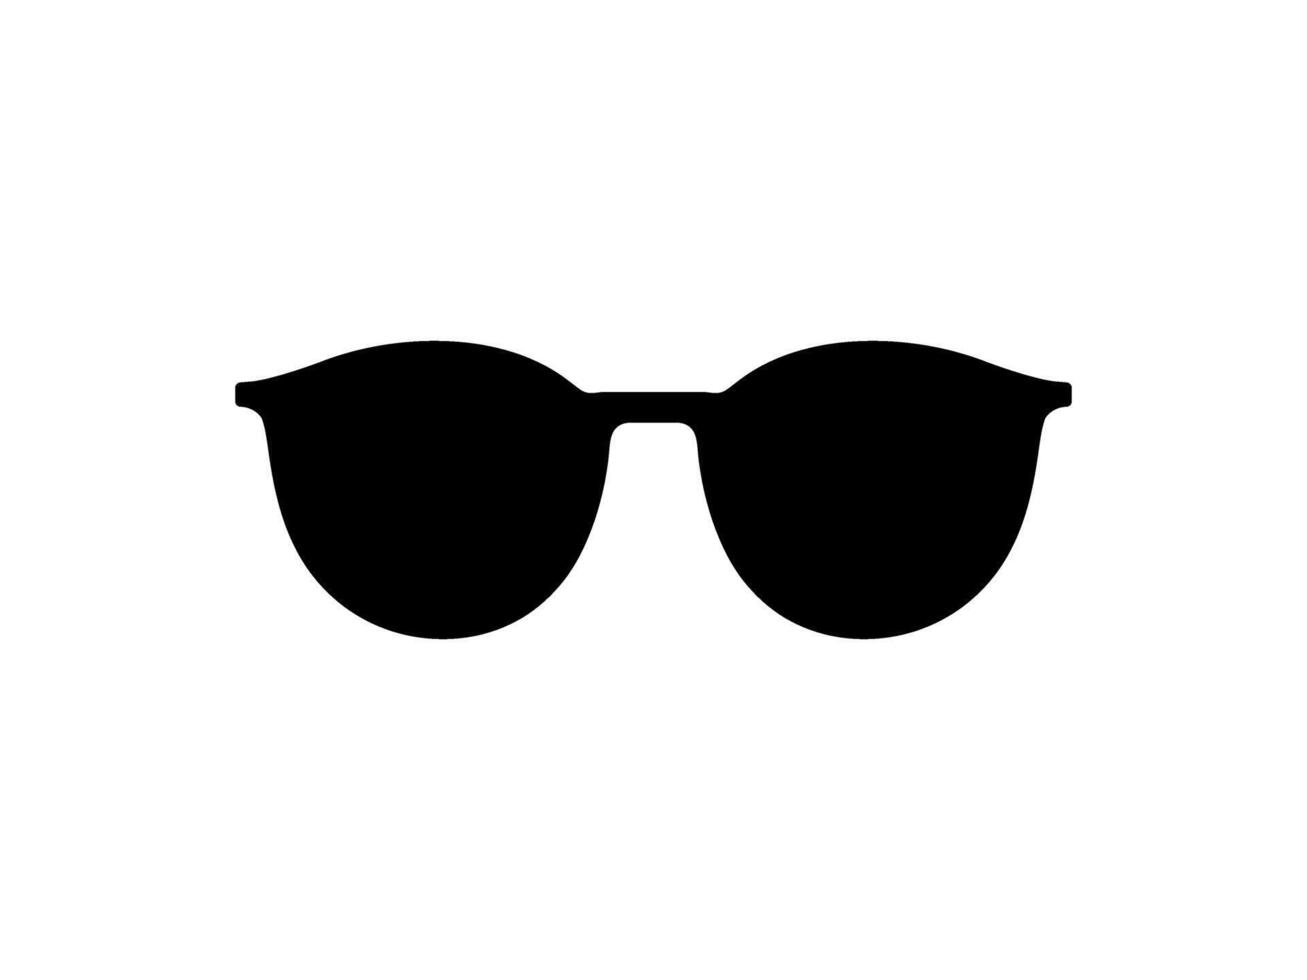 Soleil œil des lunettes silhouette, pictogramme, de face voir, plat style, pouvez utilisation pour logo gramme, applications, art illustration, modèle pour avatar profil image, site Internet, ou graphique conception élément. vecteur illustration